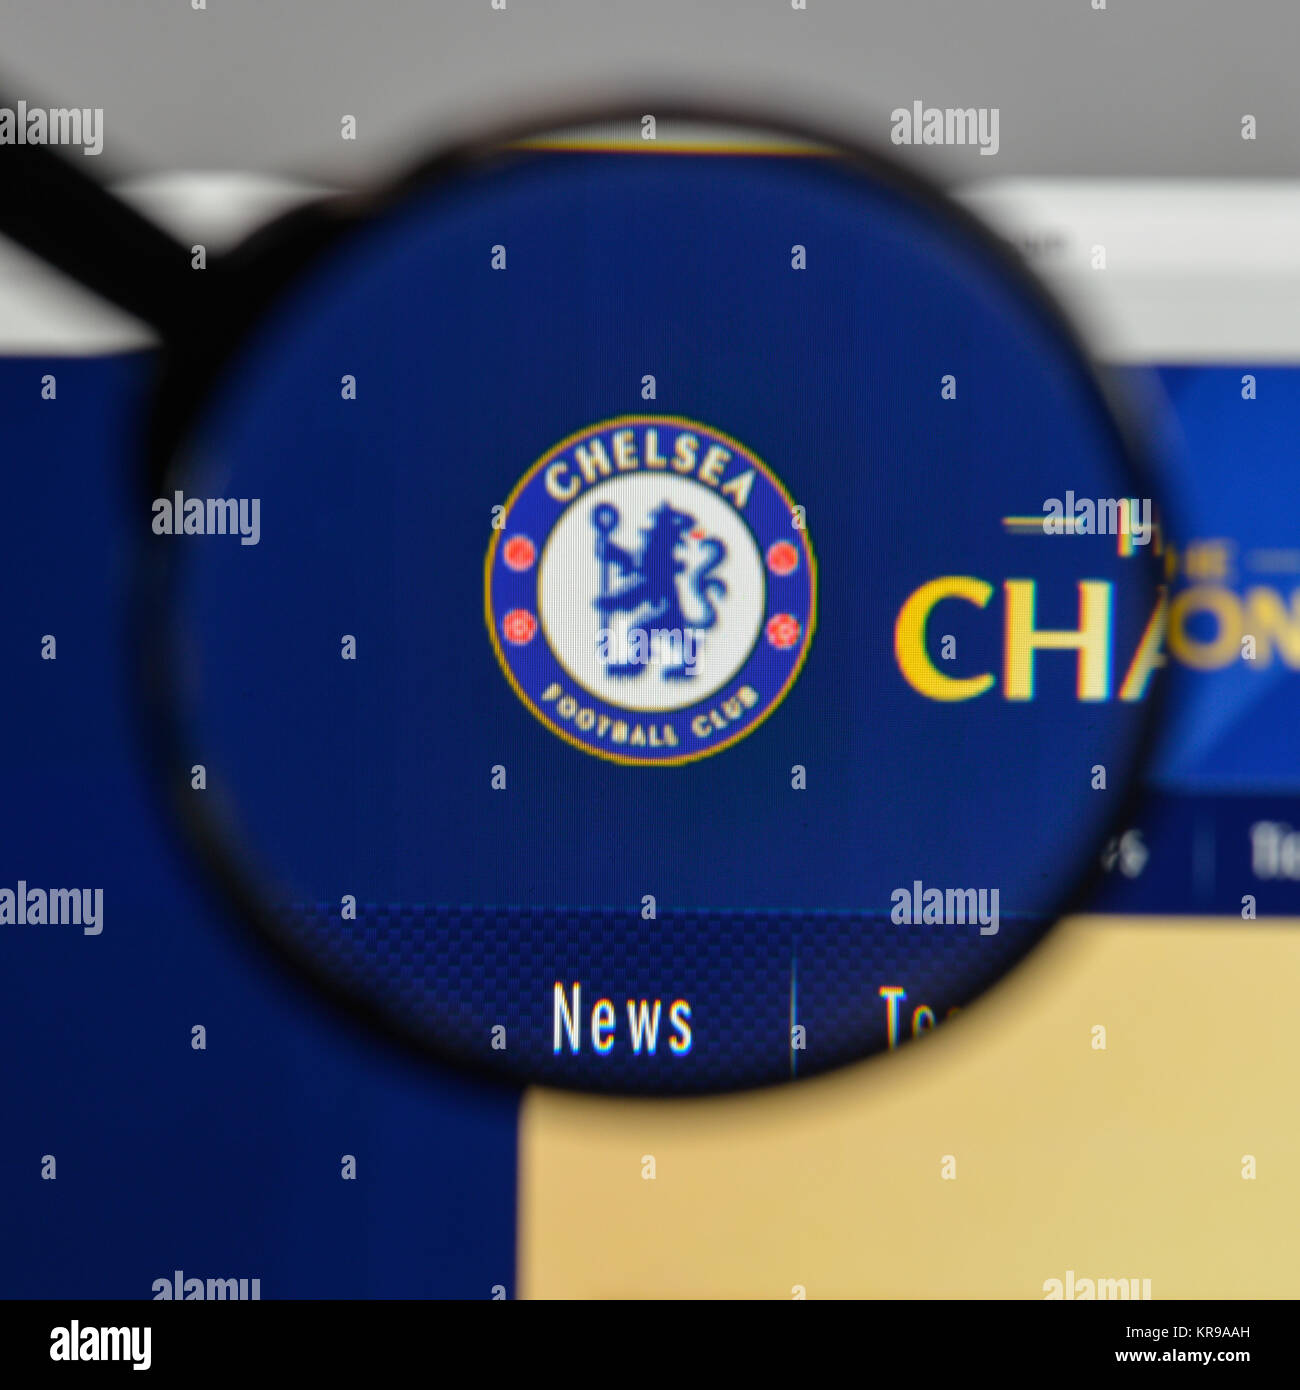 Chelsea fc logo immagini e fotografie stock ad alta risoluzione - Alamy